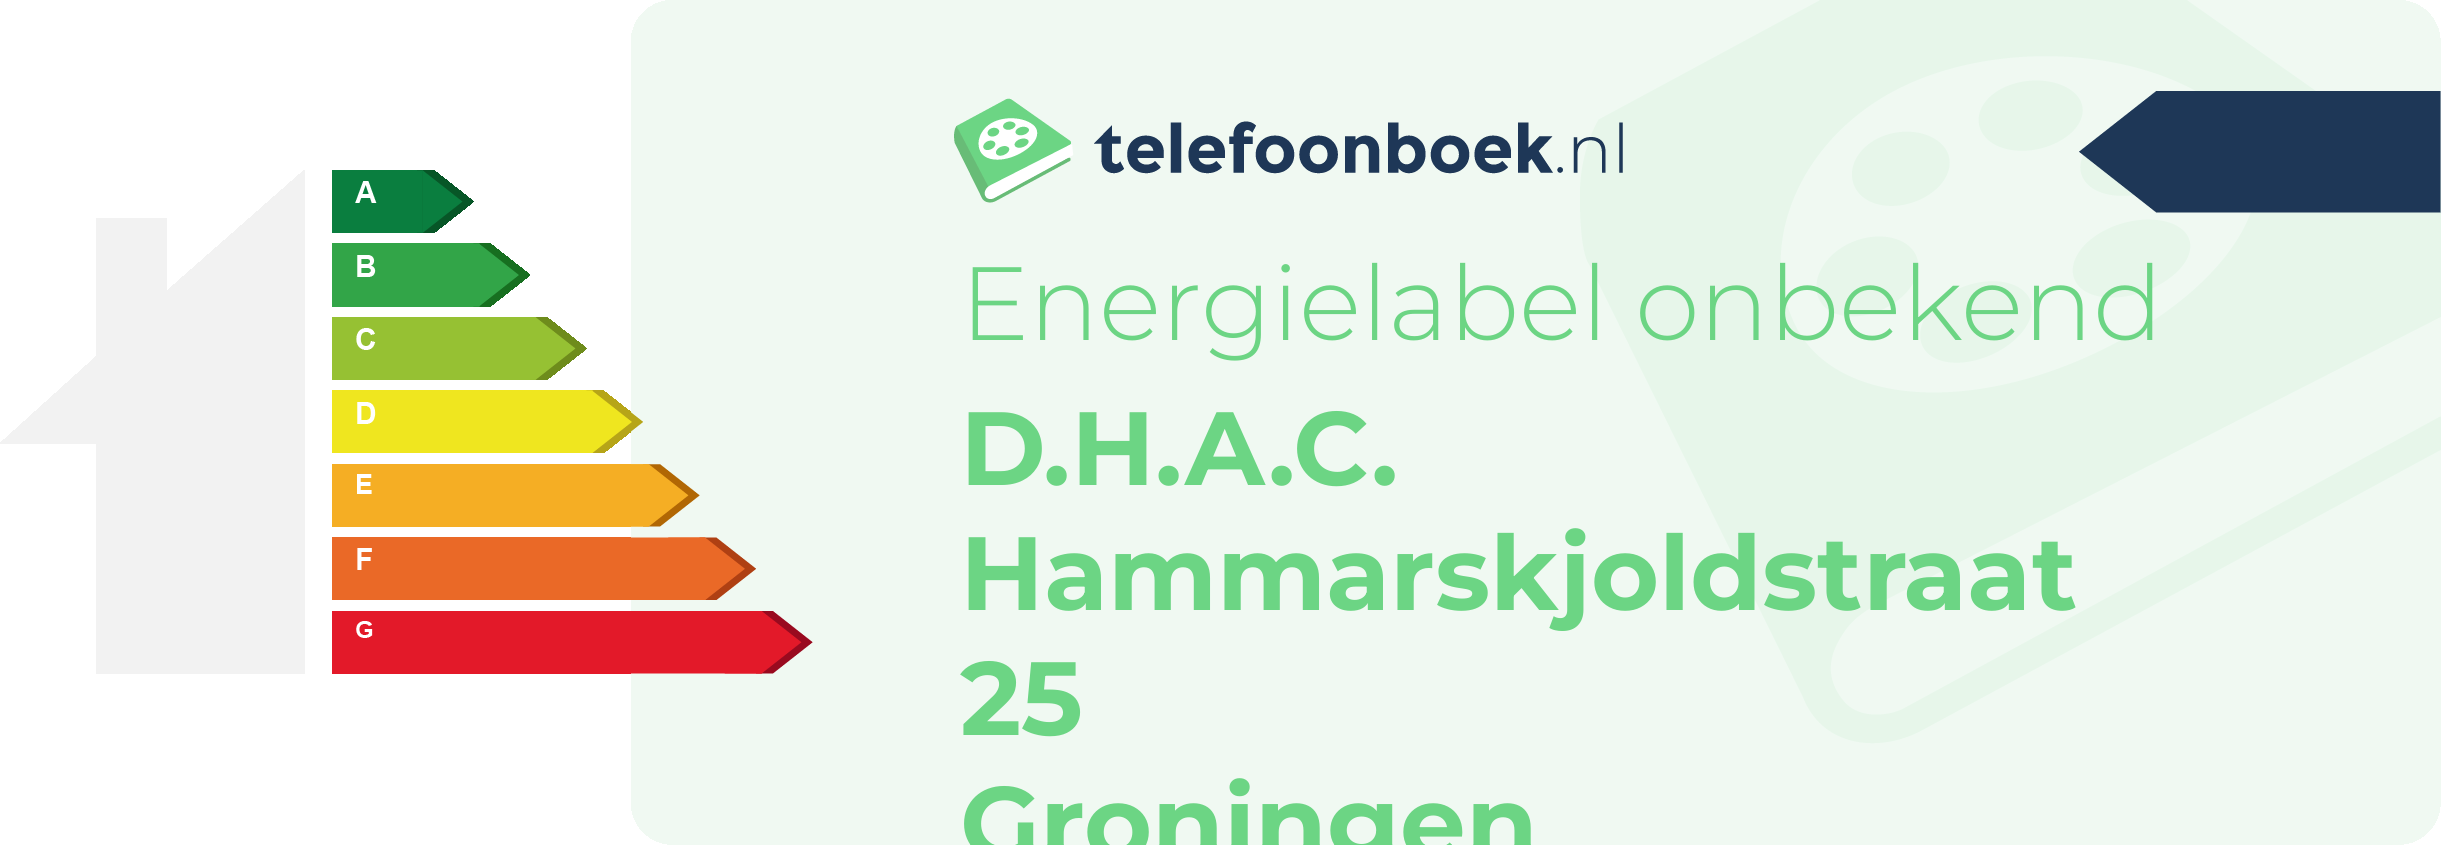 Energielabel D.H.A.C. Hammarskjoldstraat 25 Groningen